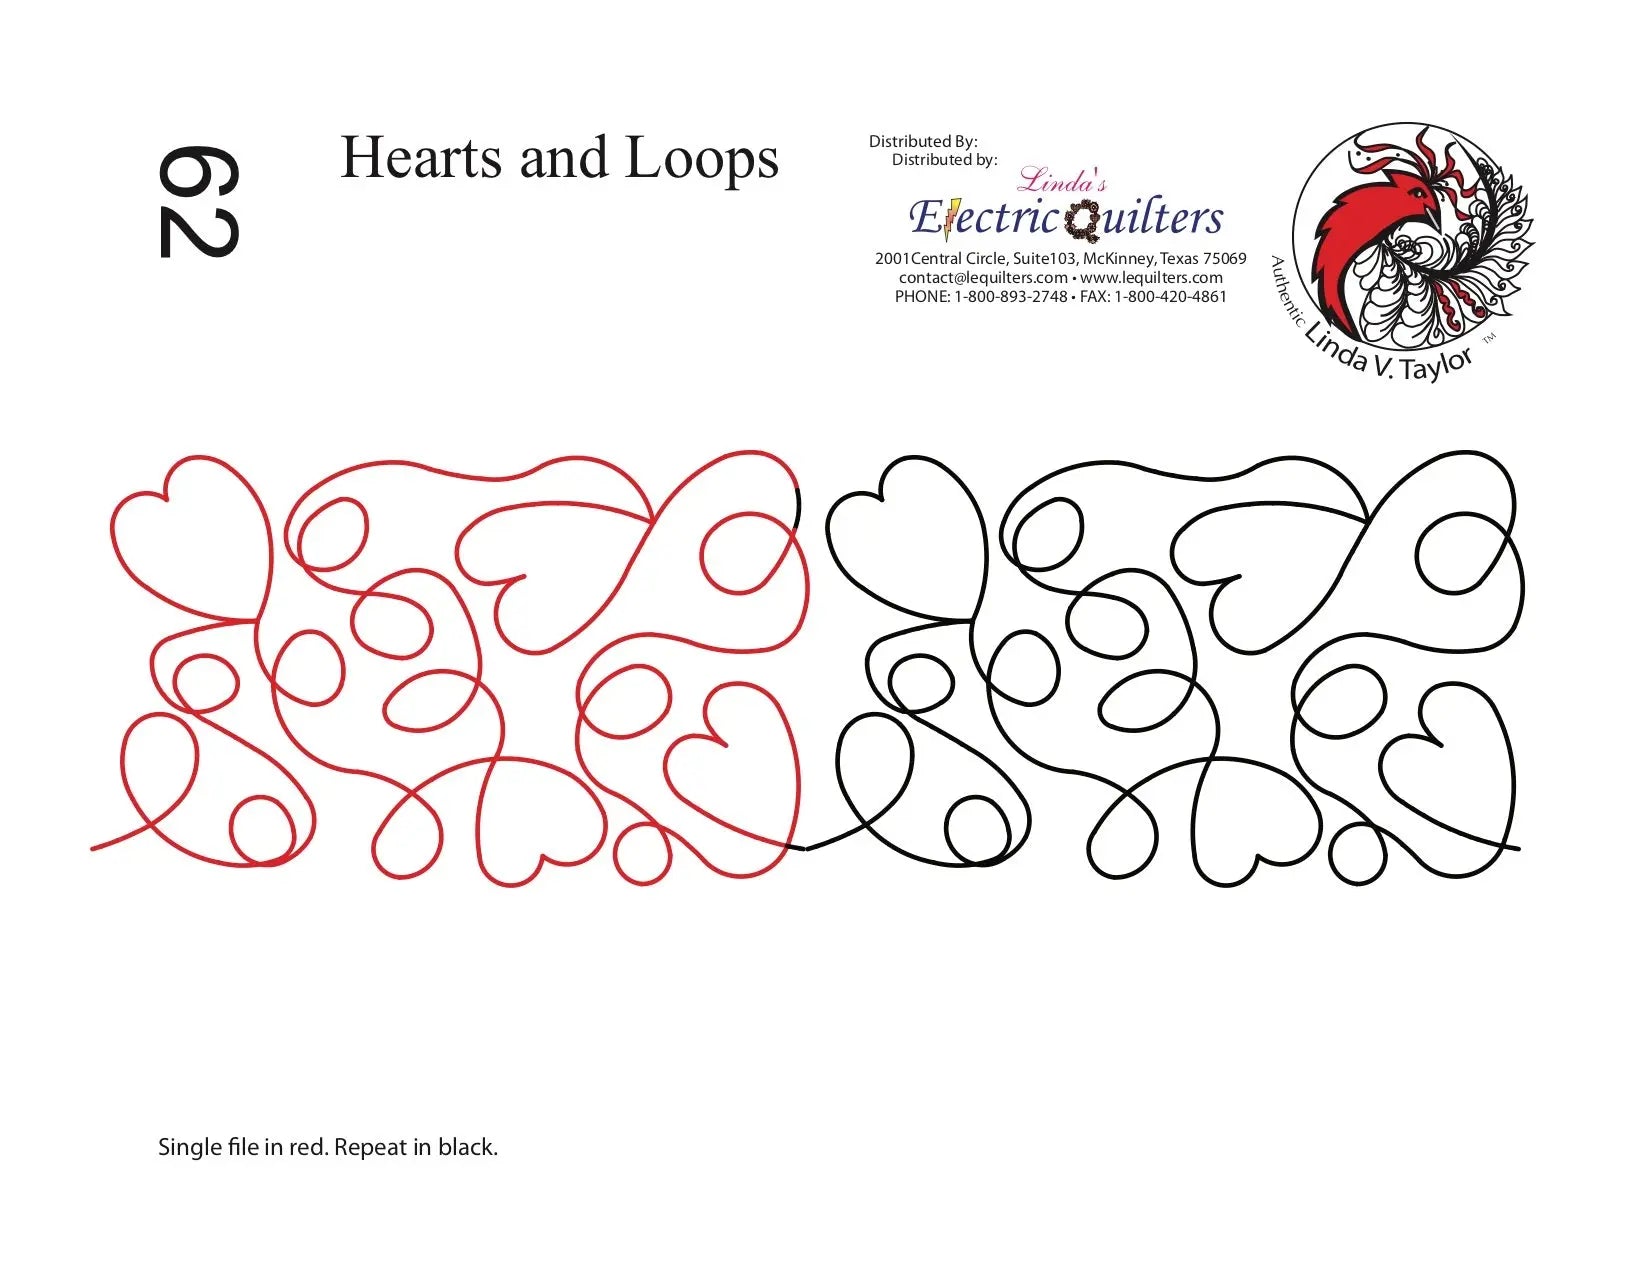 062 Hearts And Loops Pantograph by Linda V. Taylor